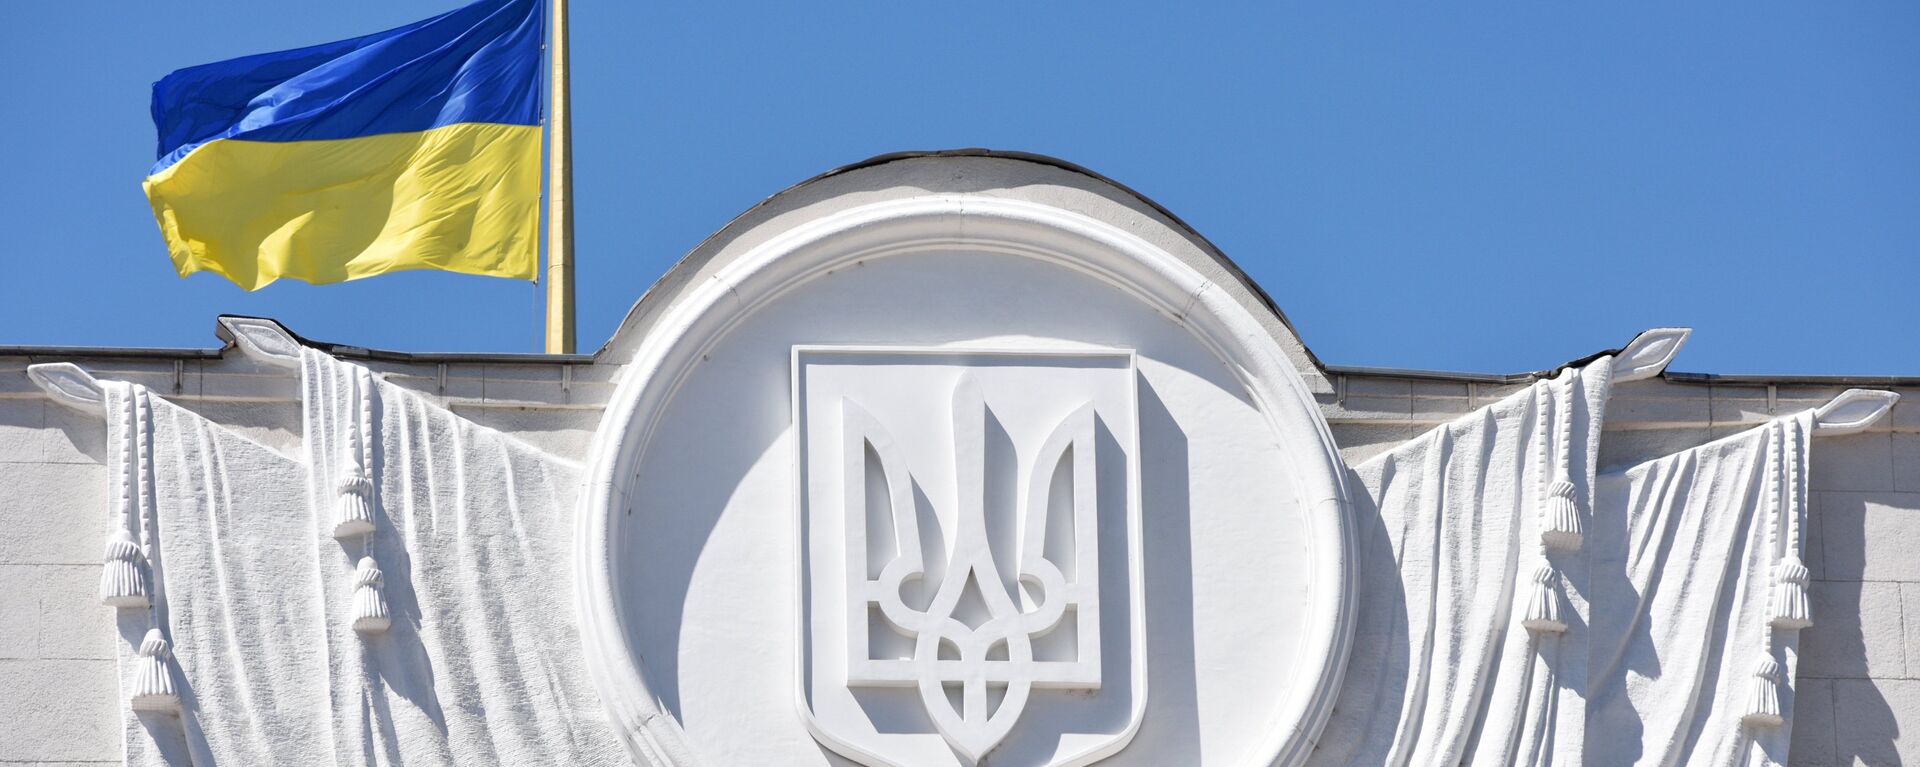 Флаг Украины на здании Верховной рады в Киеве - Sputnik Беларусь, 1920, 19.08.2021